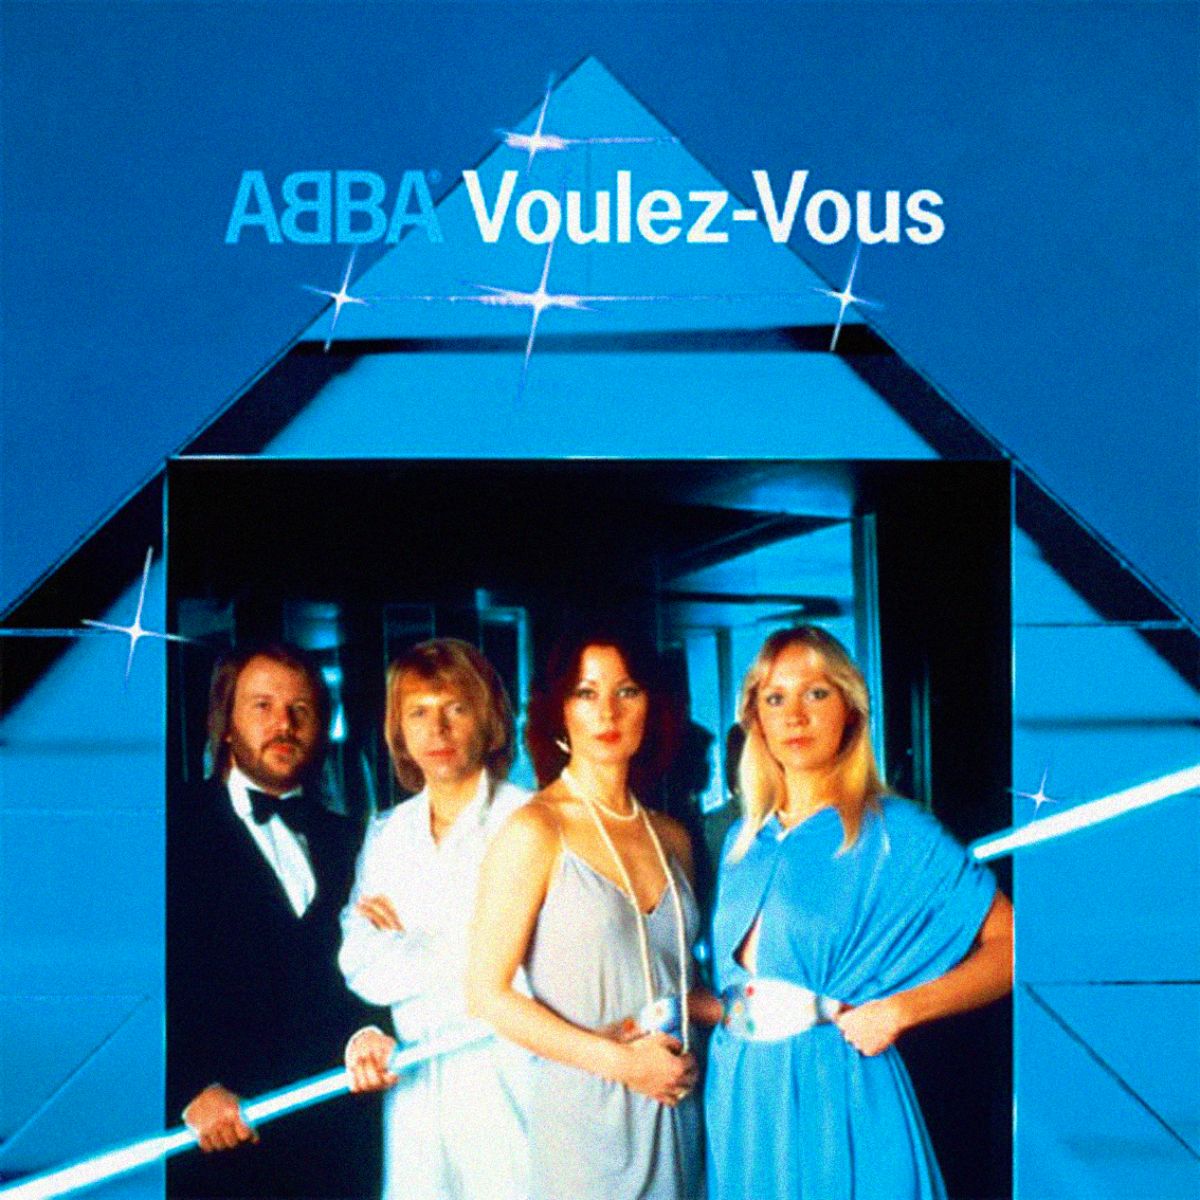 Voulez-Vous (альбом ABBA)